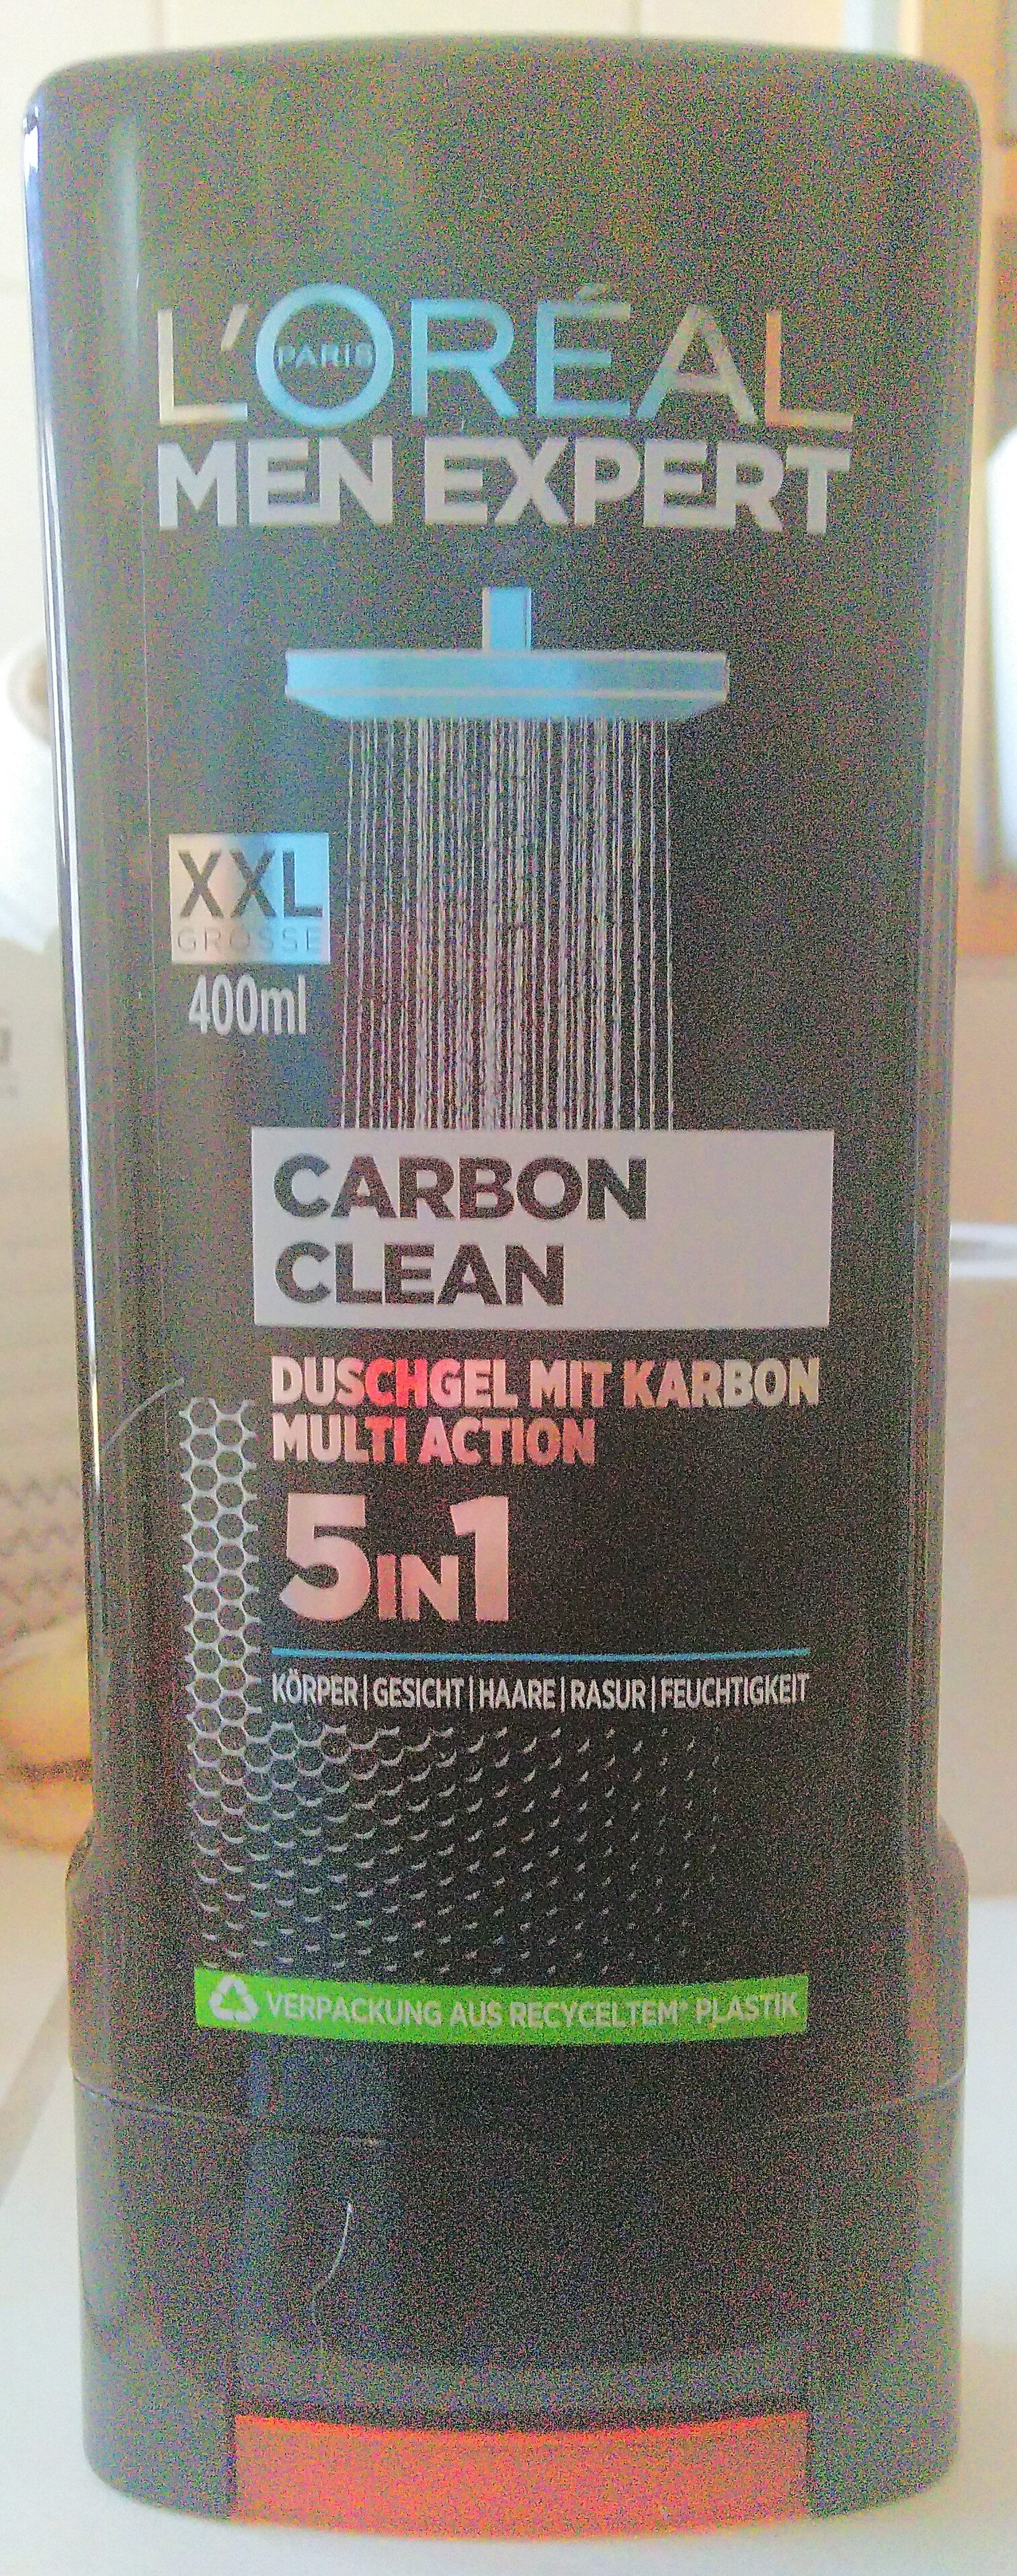 Men Expert Carbon Clean Duschgel 5in1 - Produkt - de